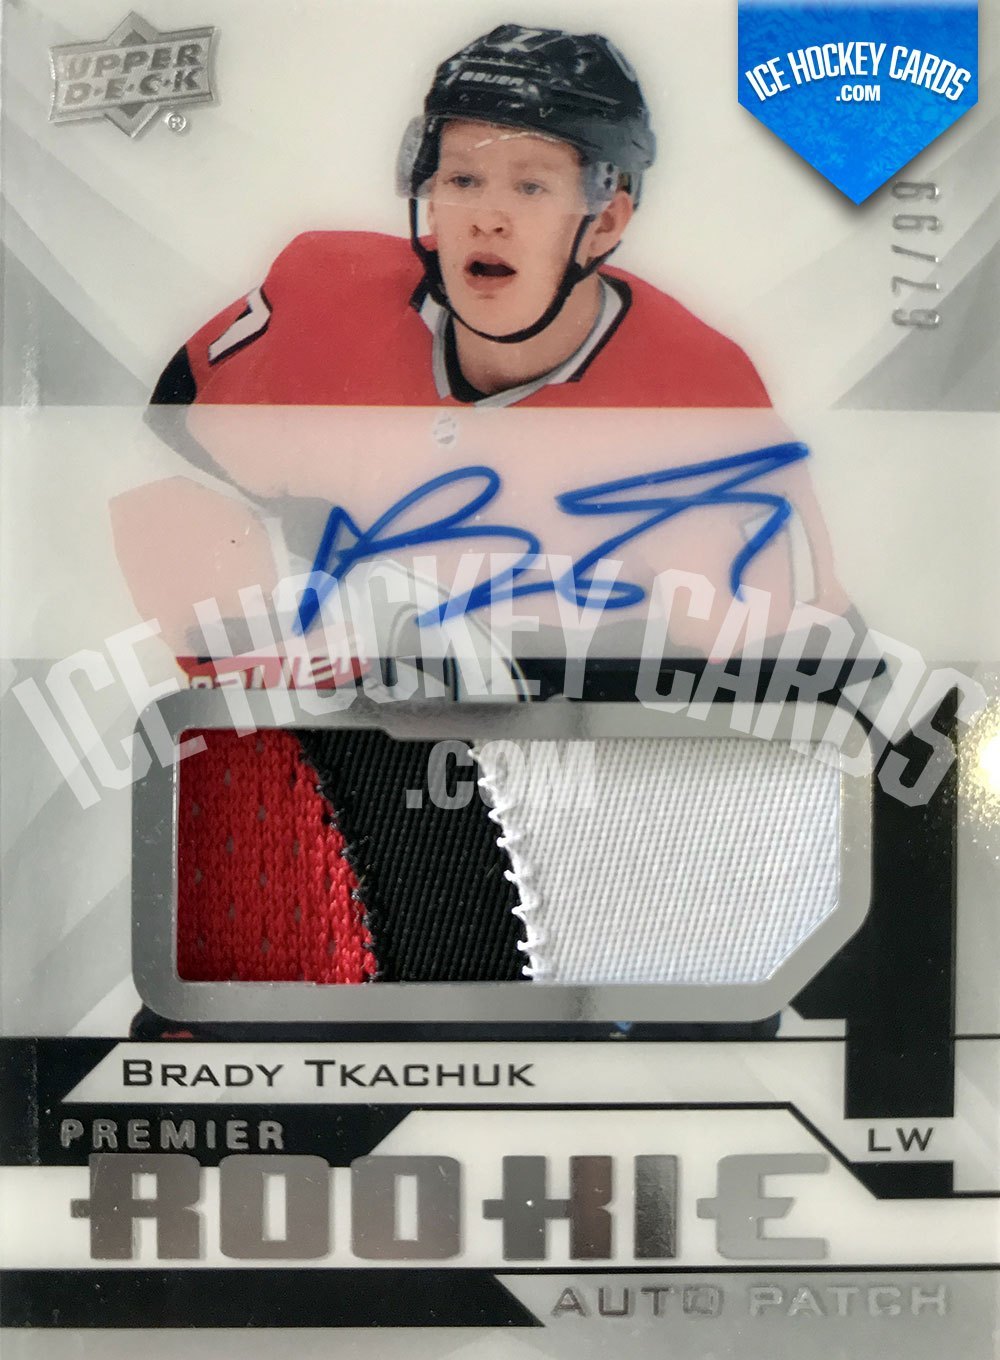 Upper Deck - Premier Hockey 2018-19 - Brady Tkachuk Premier Rookie Auto Patch RC